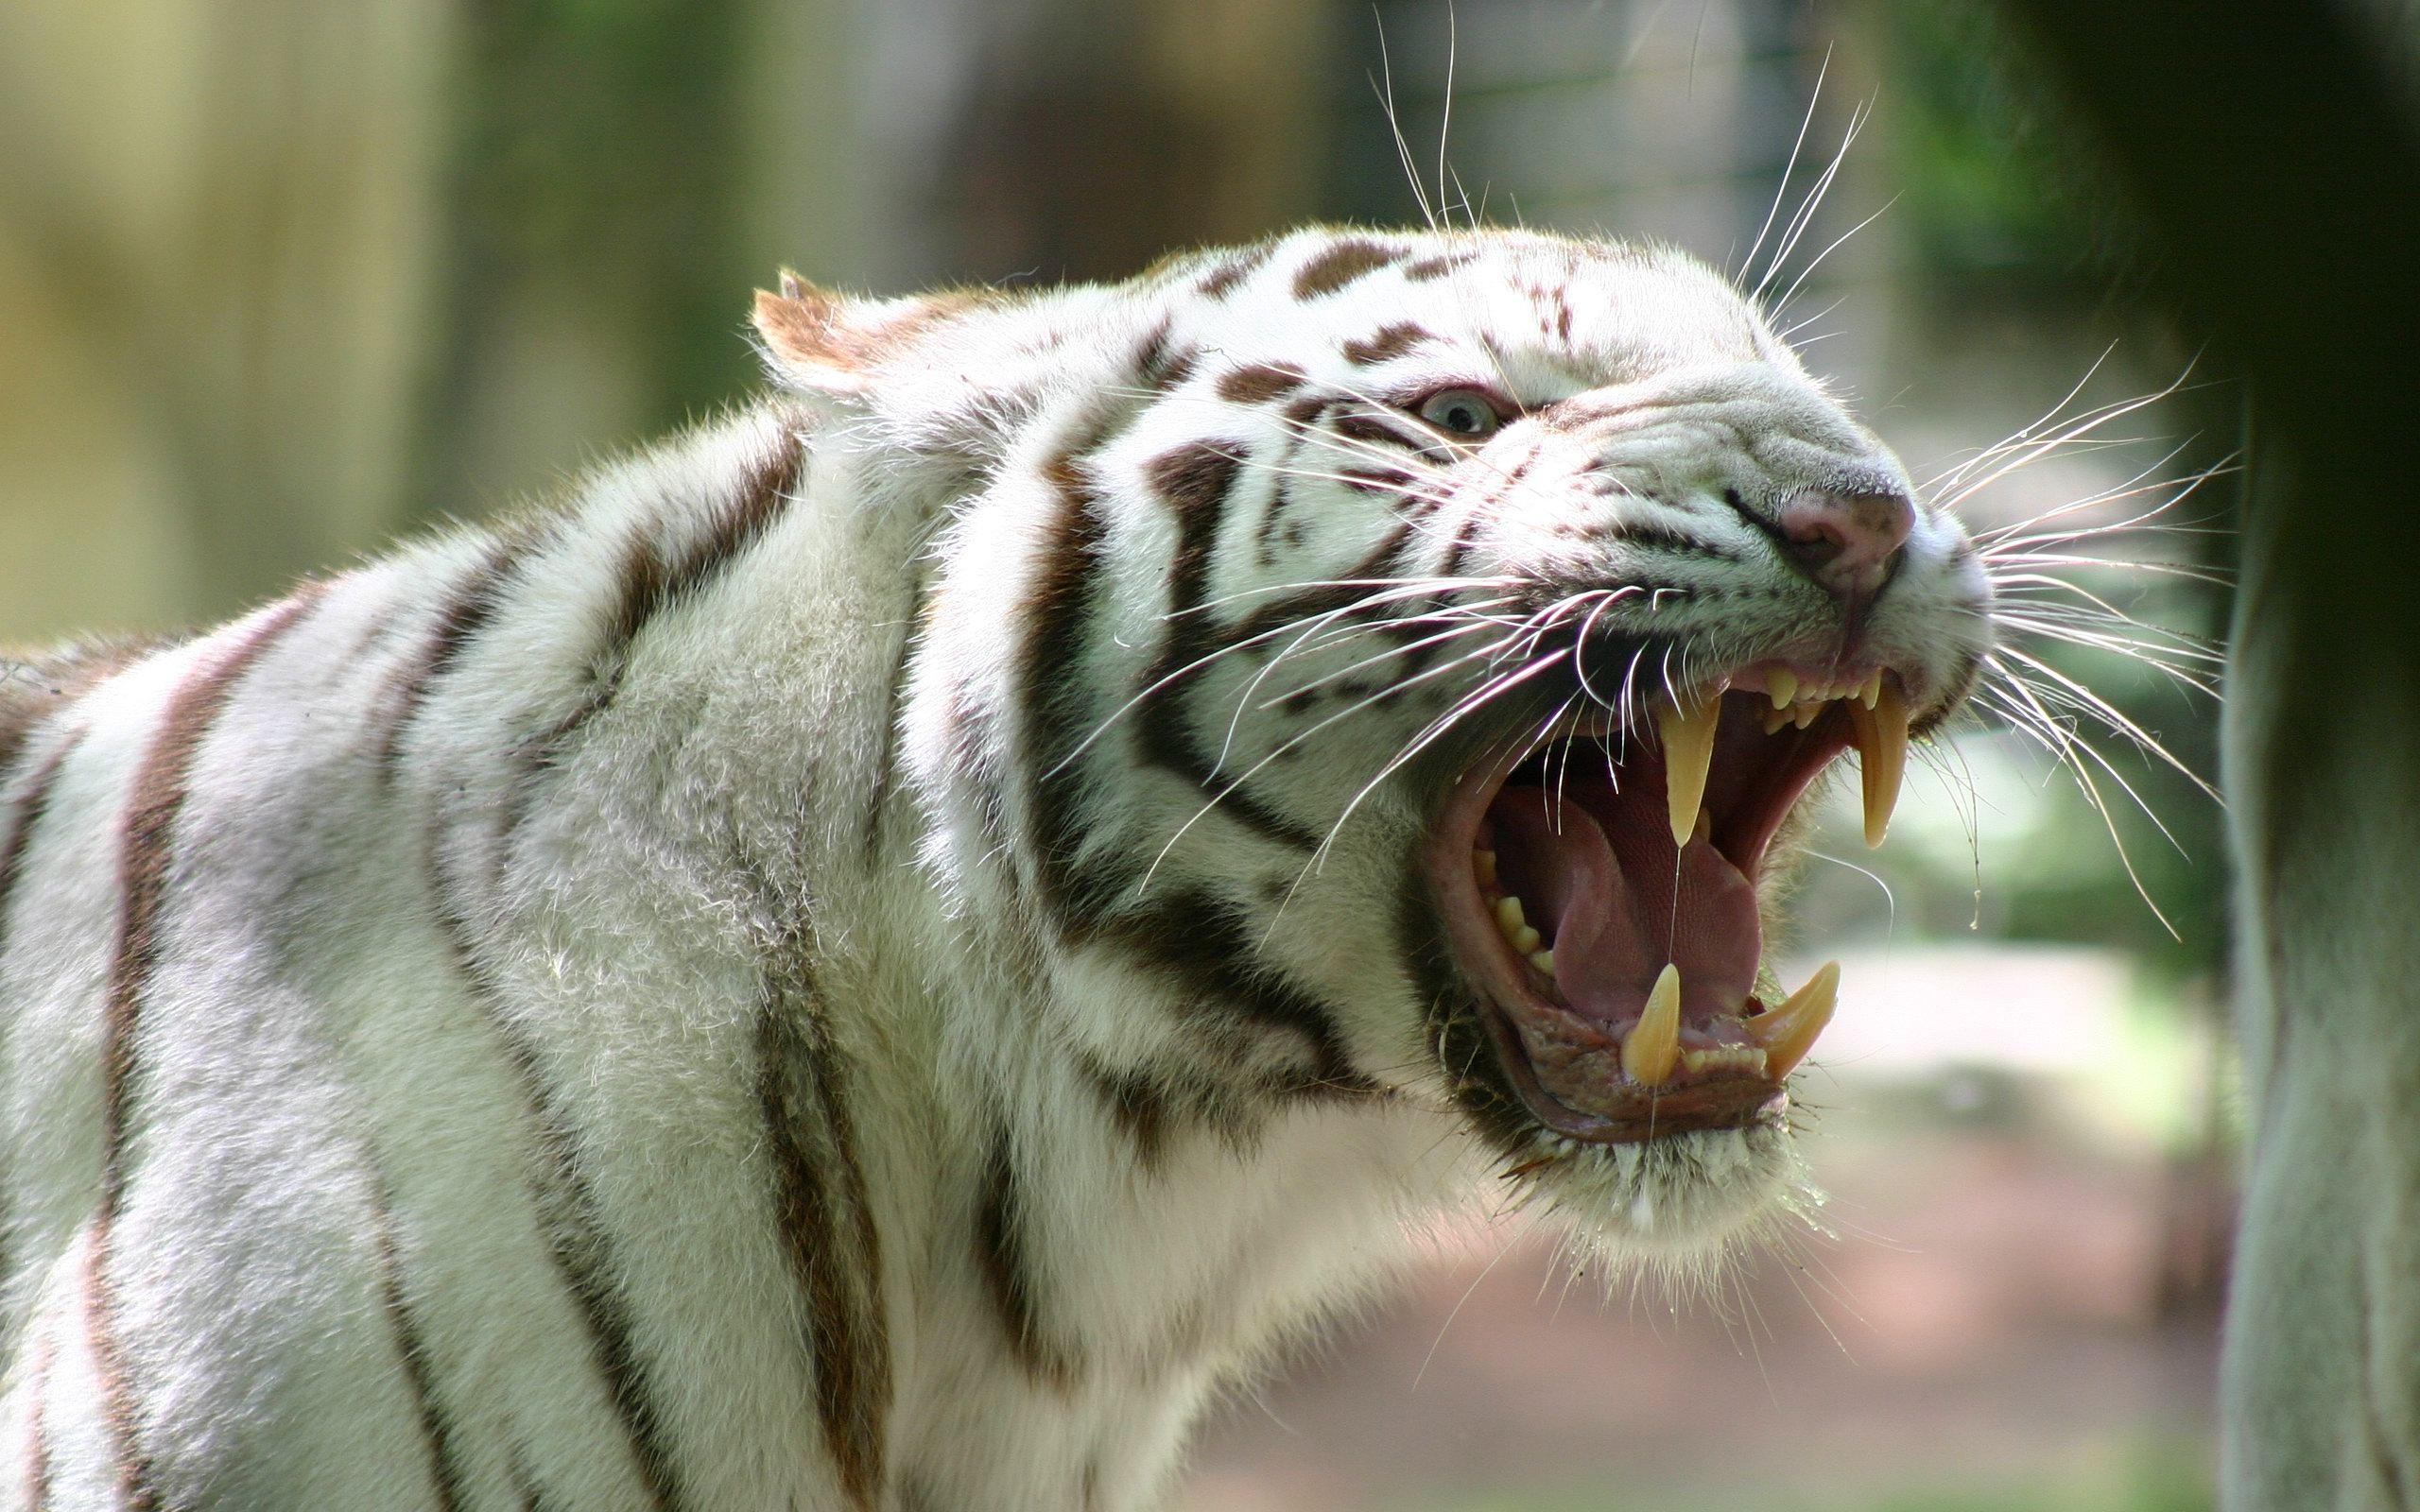 Tiger Roaring Image